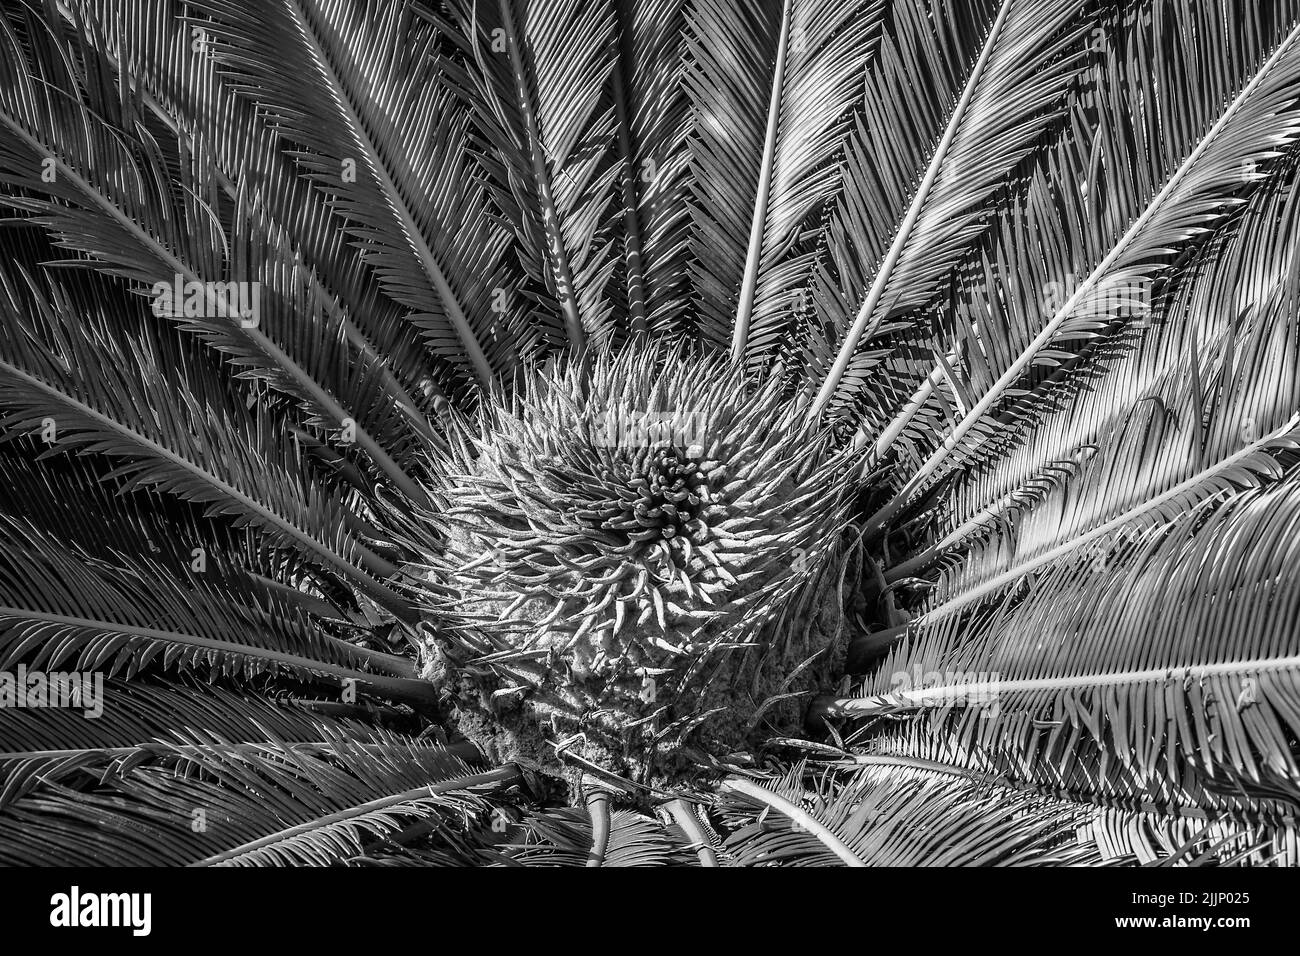 Centro di piante tropicali in primo piano in bianco e nero Foto Stock